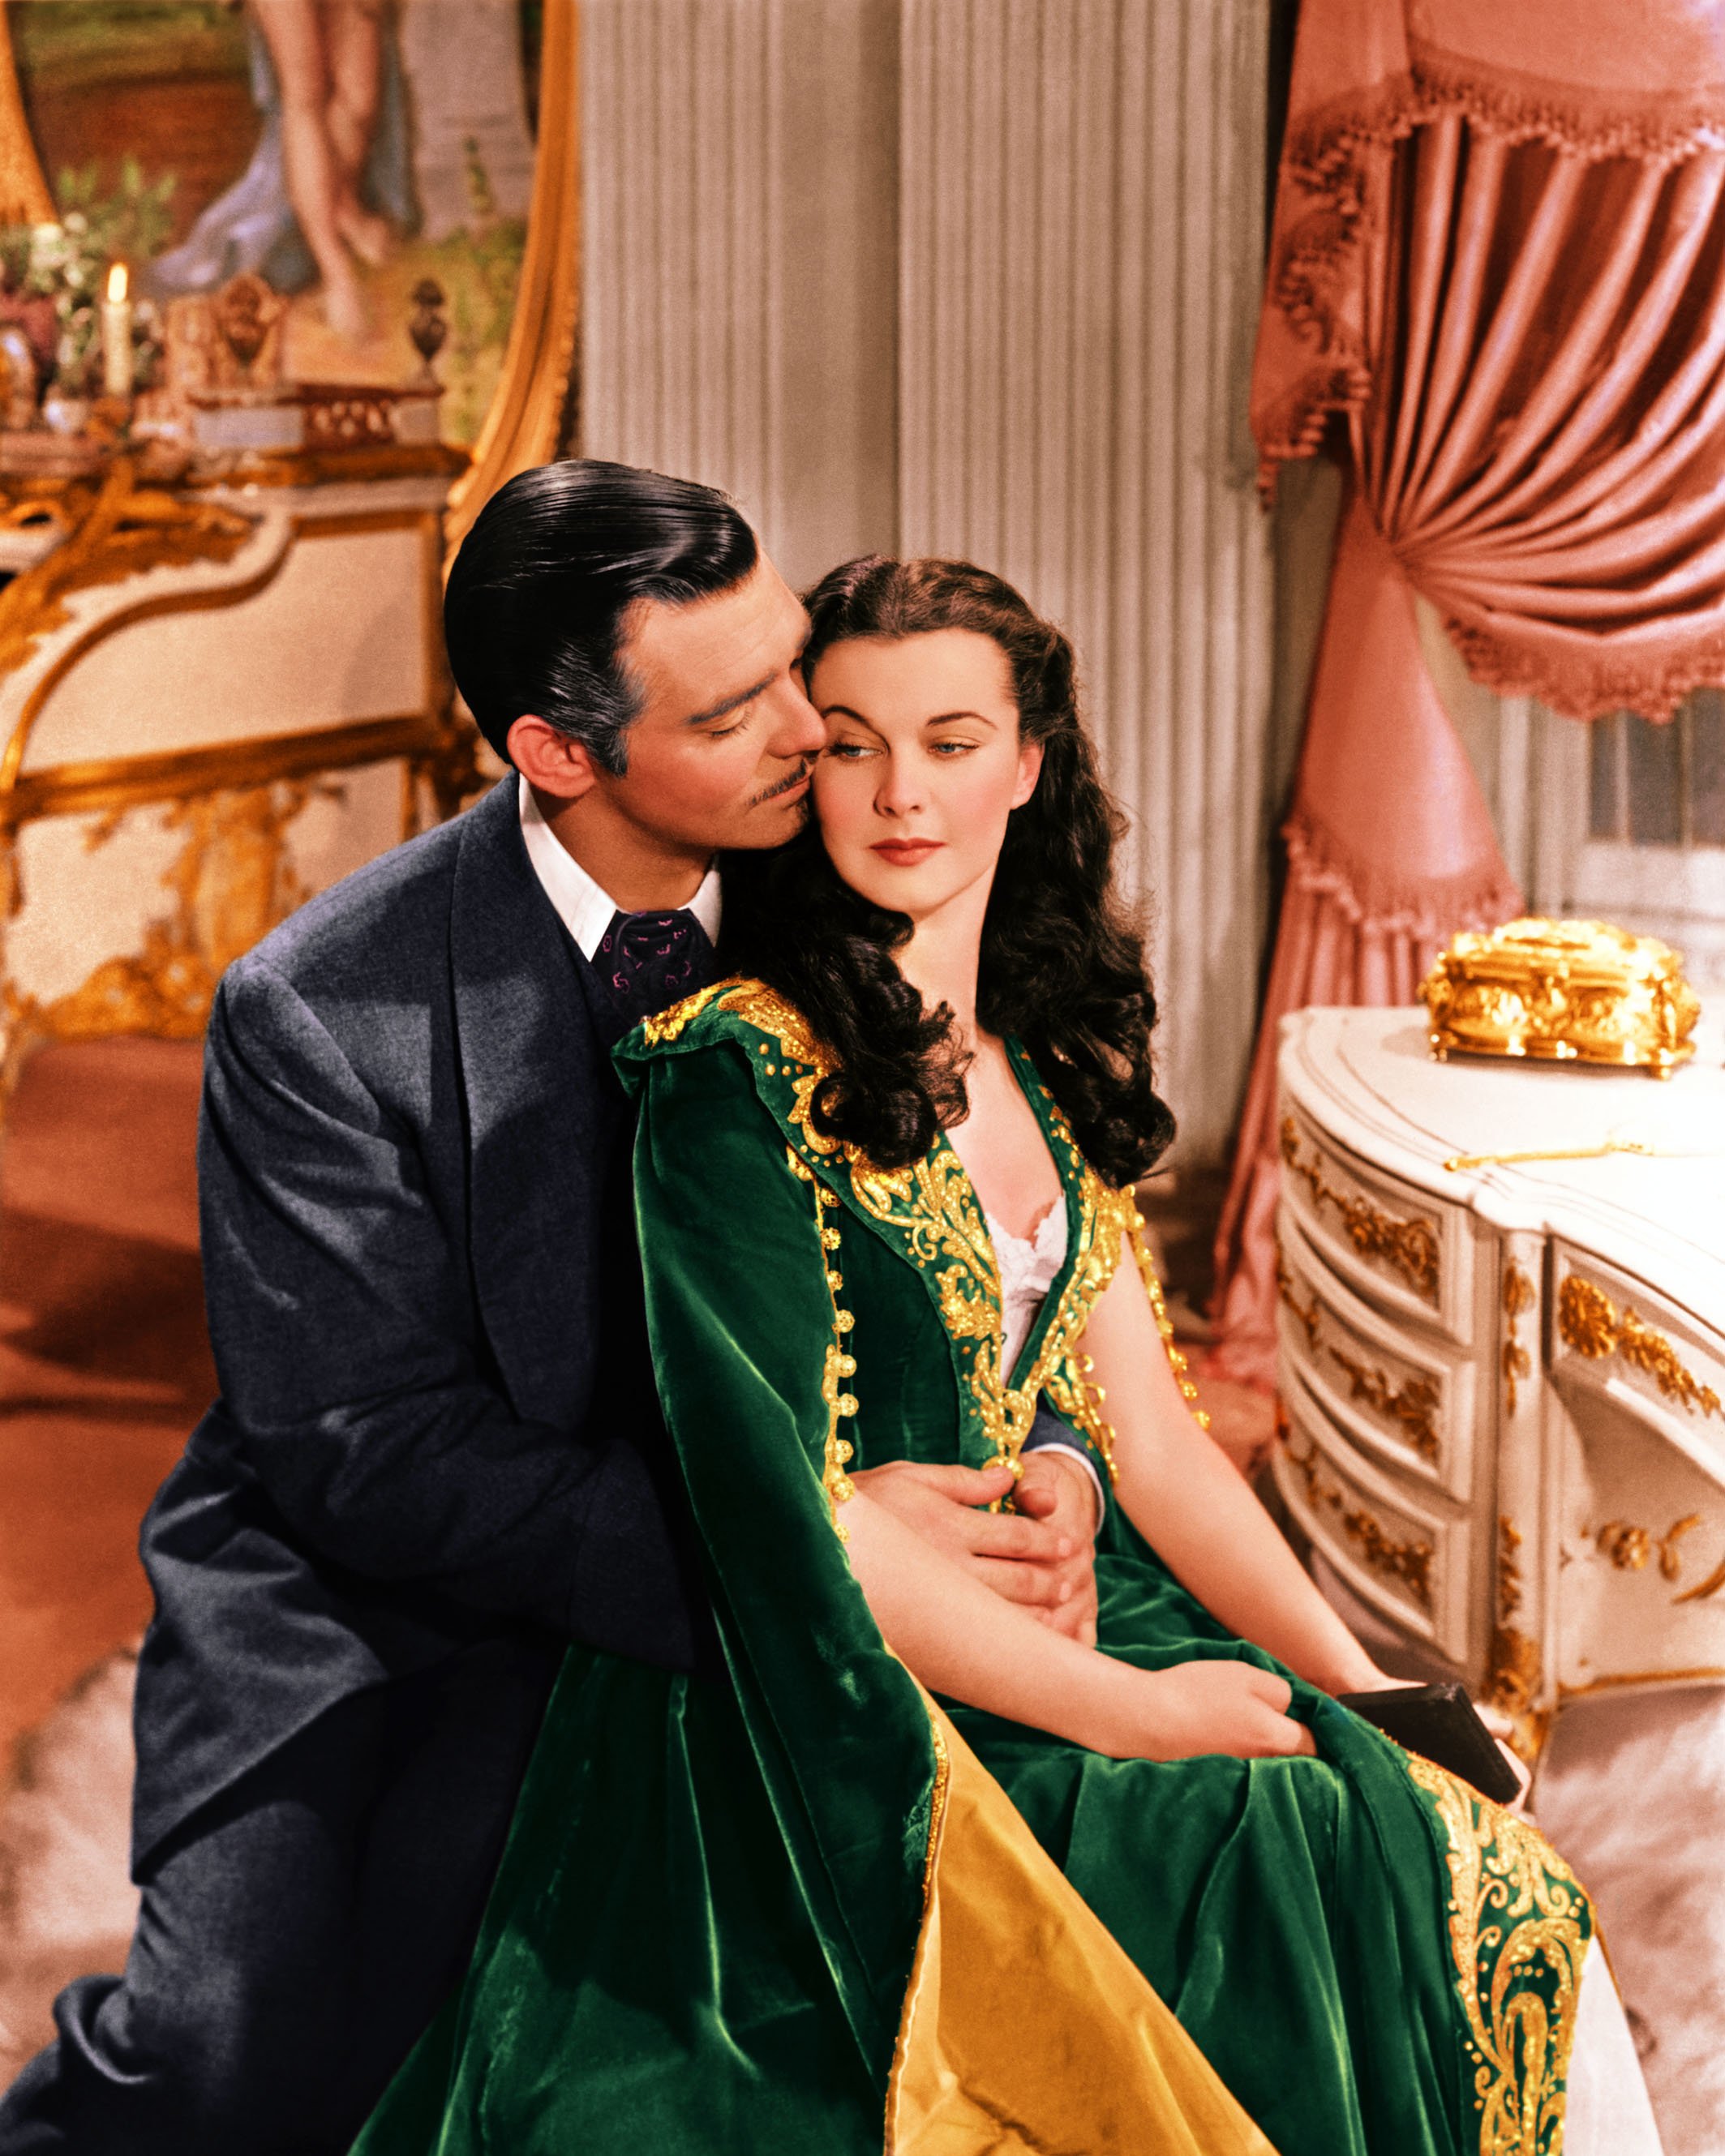 Clark Gable (19011960), US actor, and Vivien Leigh (1913-1967), British actress, in a publicity still issued for the film, 'Gone with the Wind', 1939. The drama, directed by Victor Fleming (1889-1949), starred Gable as 'Rhett Butler', and Leigh as 'Scarlett O'Hara'. | Source: Getty Images